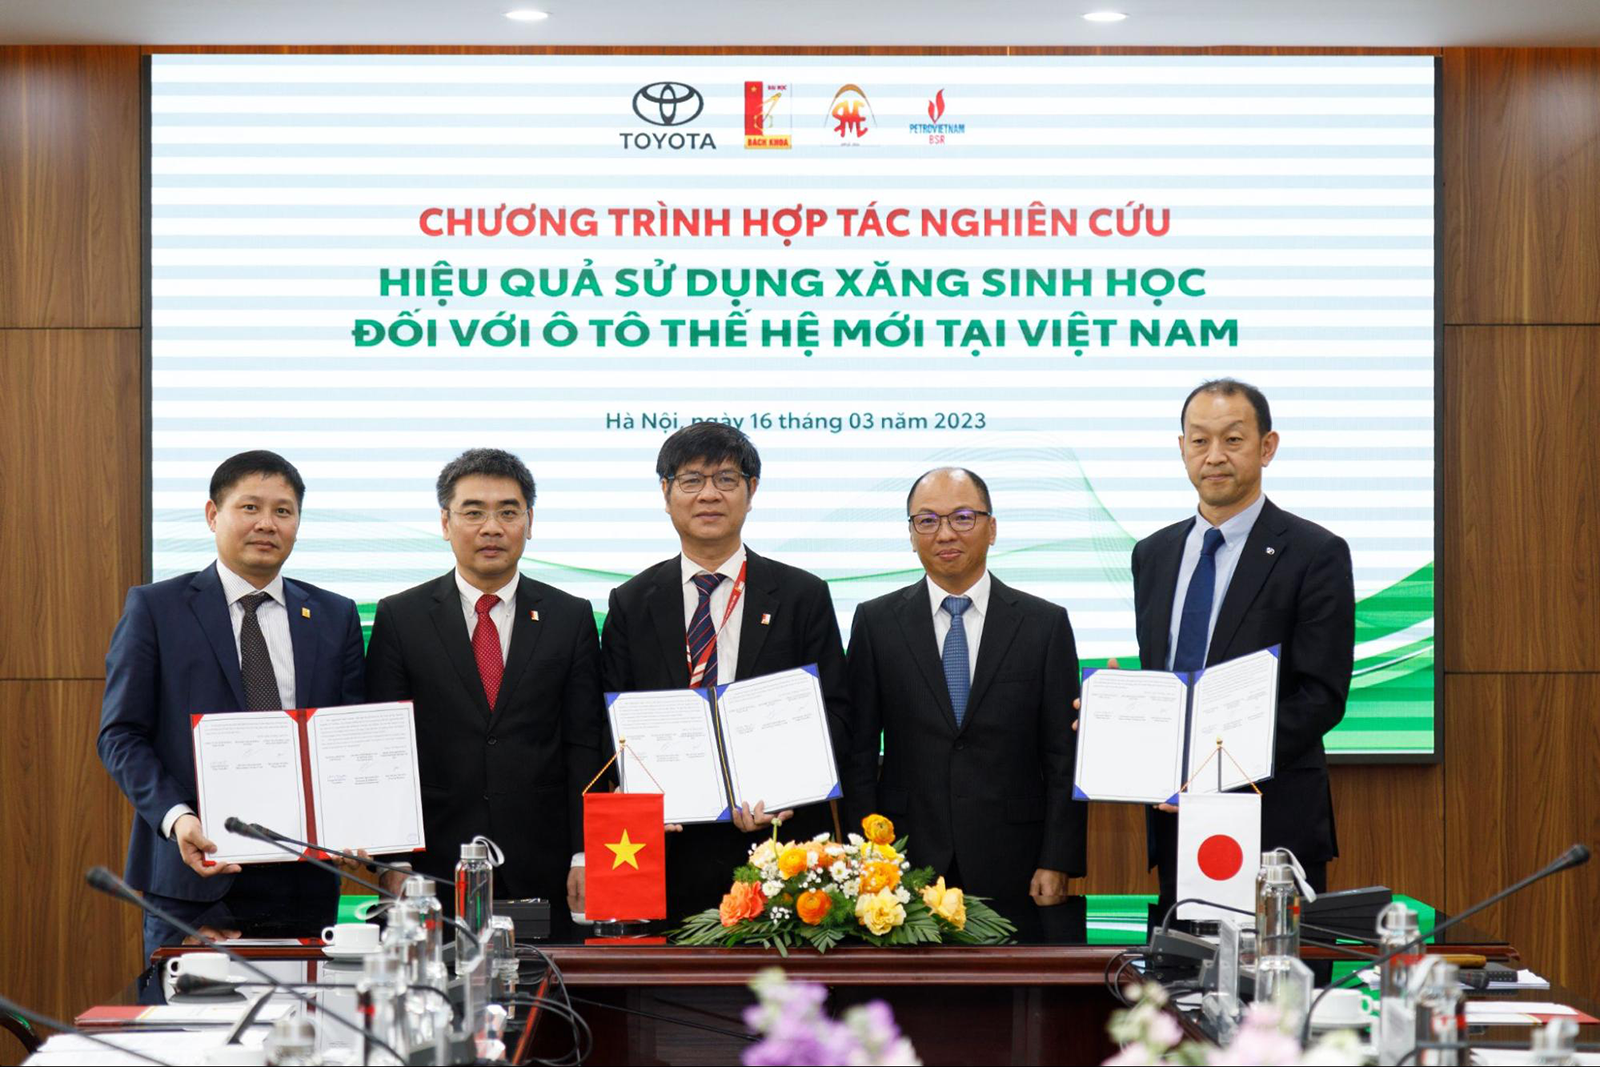 (Toyota sẽ hợp tác cùng đại học Bách Khoa Hà Nội và Công ty cổ phần lọc hóa dầu Bình Sơn trong dự án lần này)